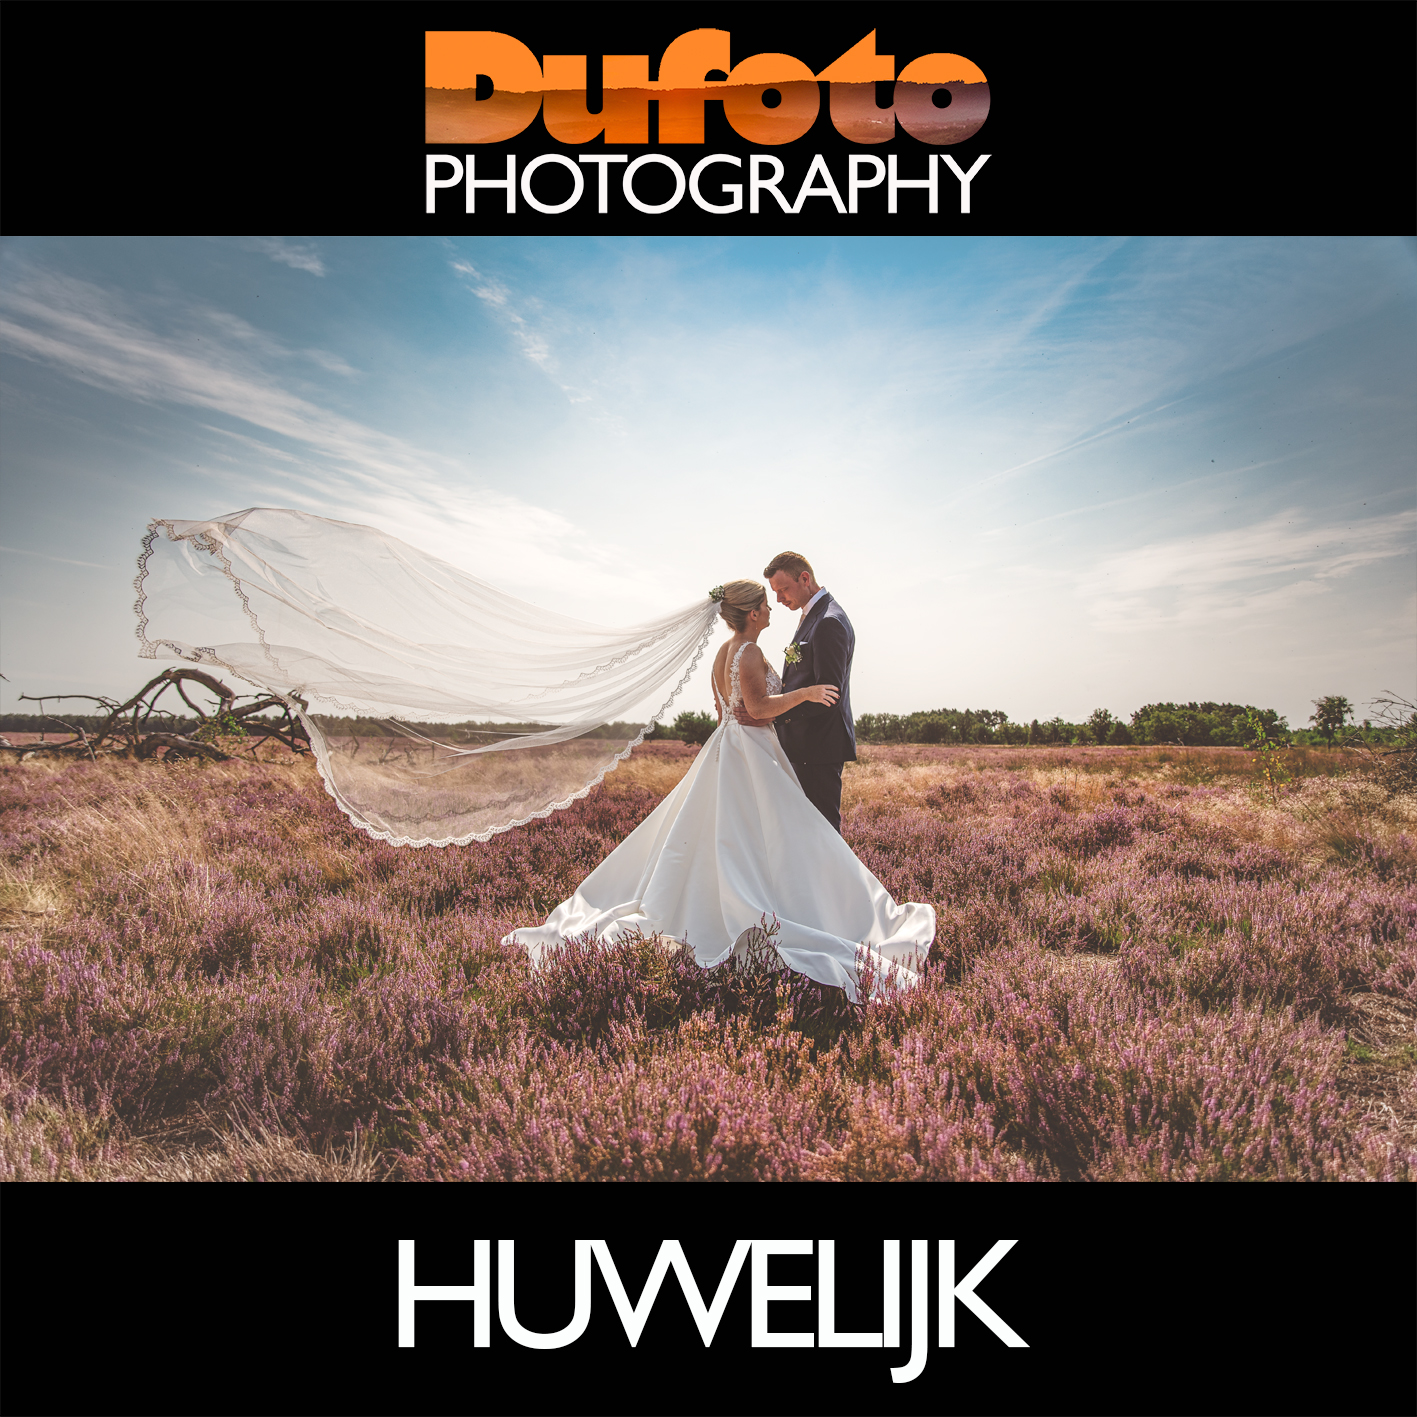 Huwelijksfotografie, bruidsfotografie, wedding